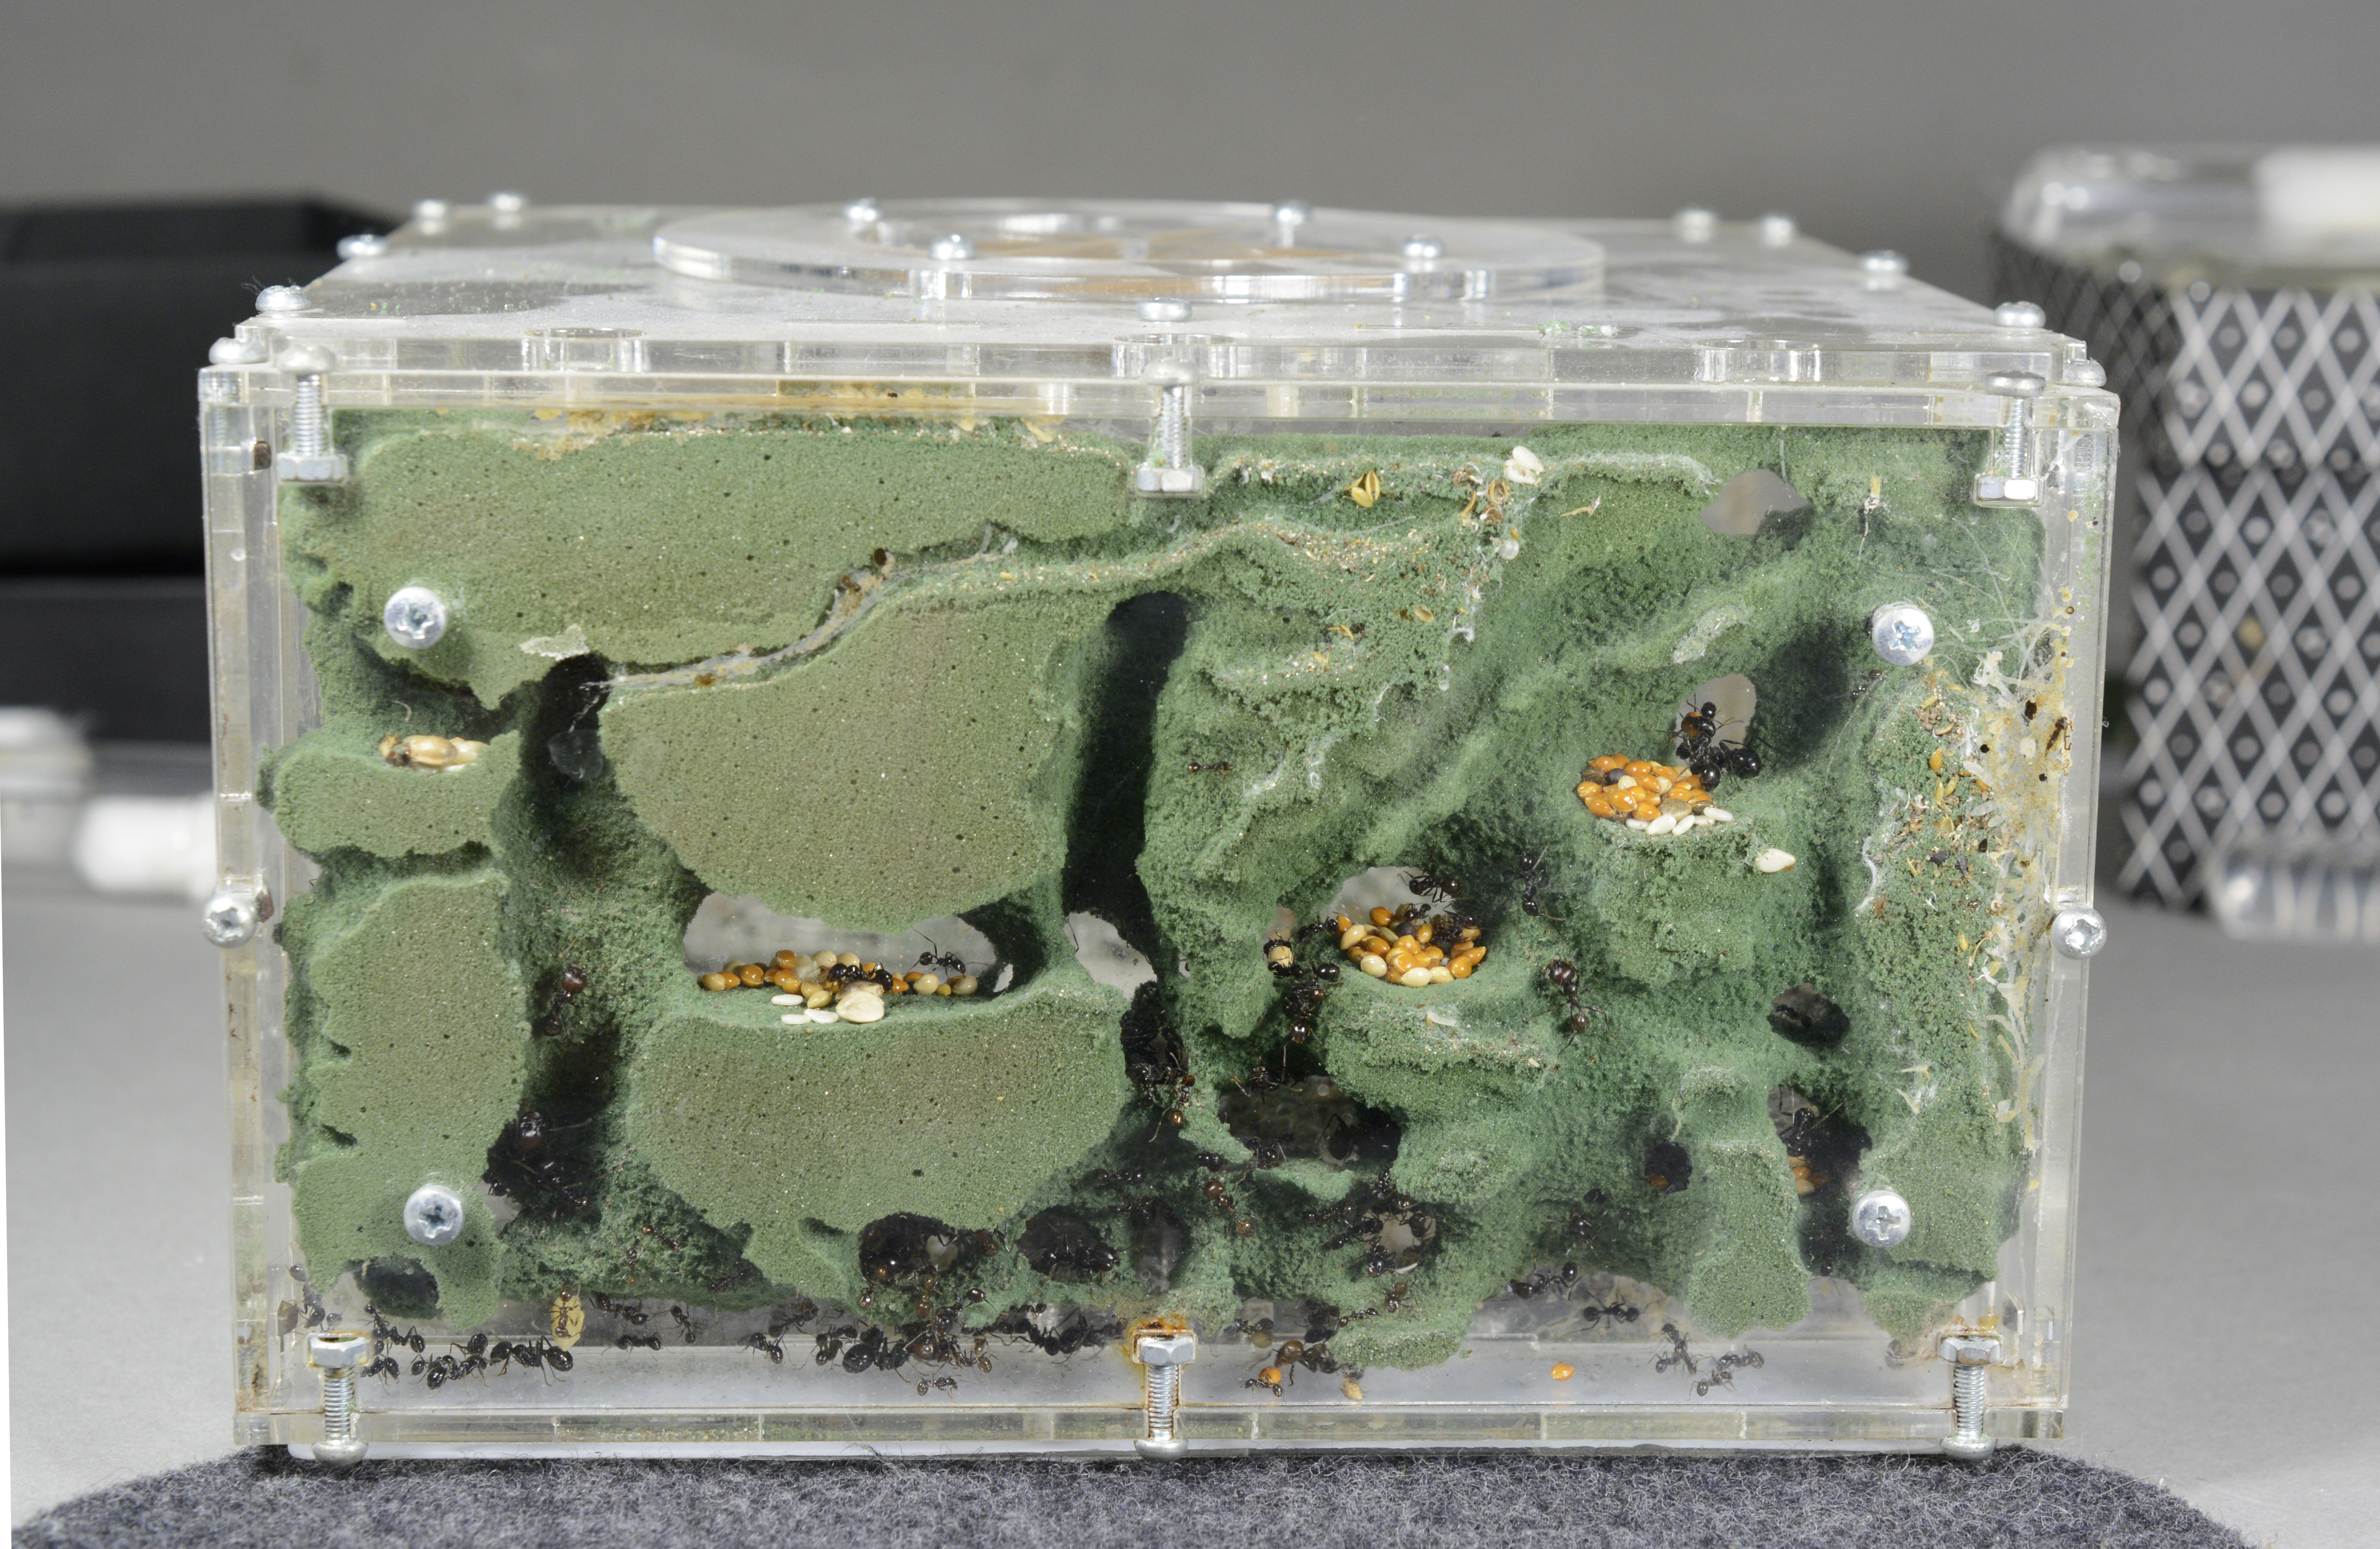 Természetes körülményeket imitáló farm Messor barbarus hangyákkal, amelyek maguk rágják ki járataikat